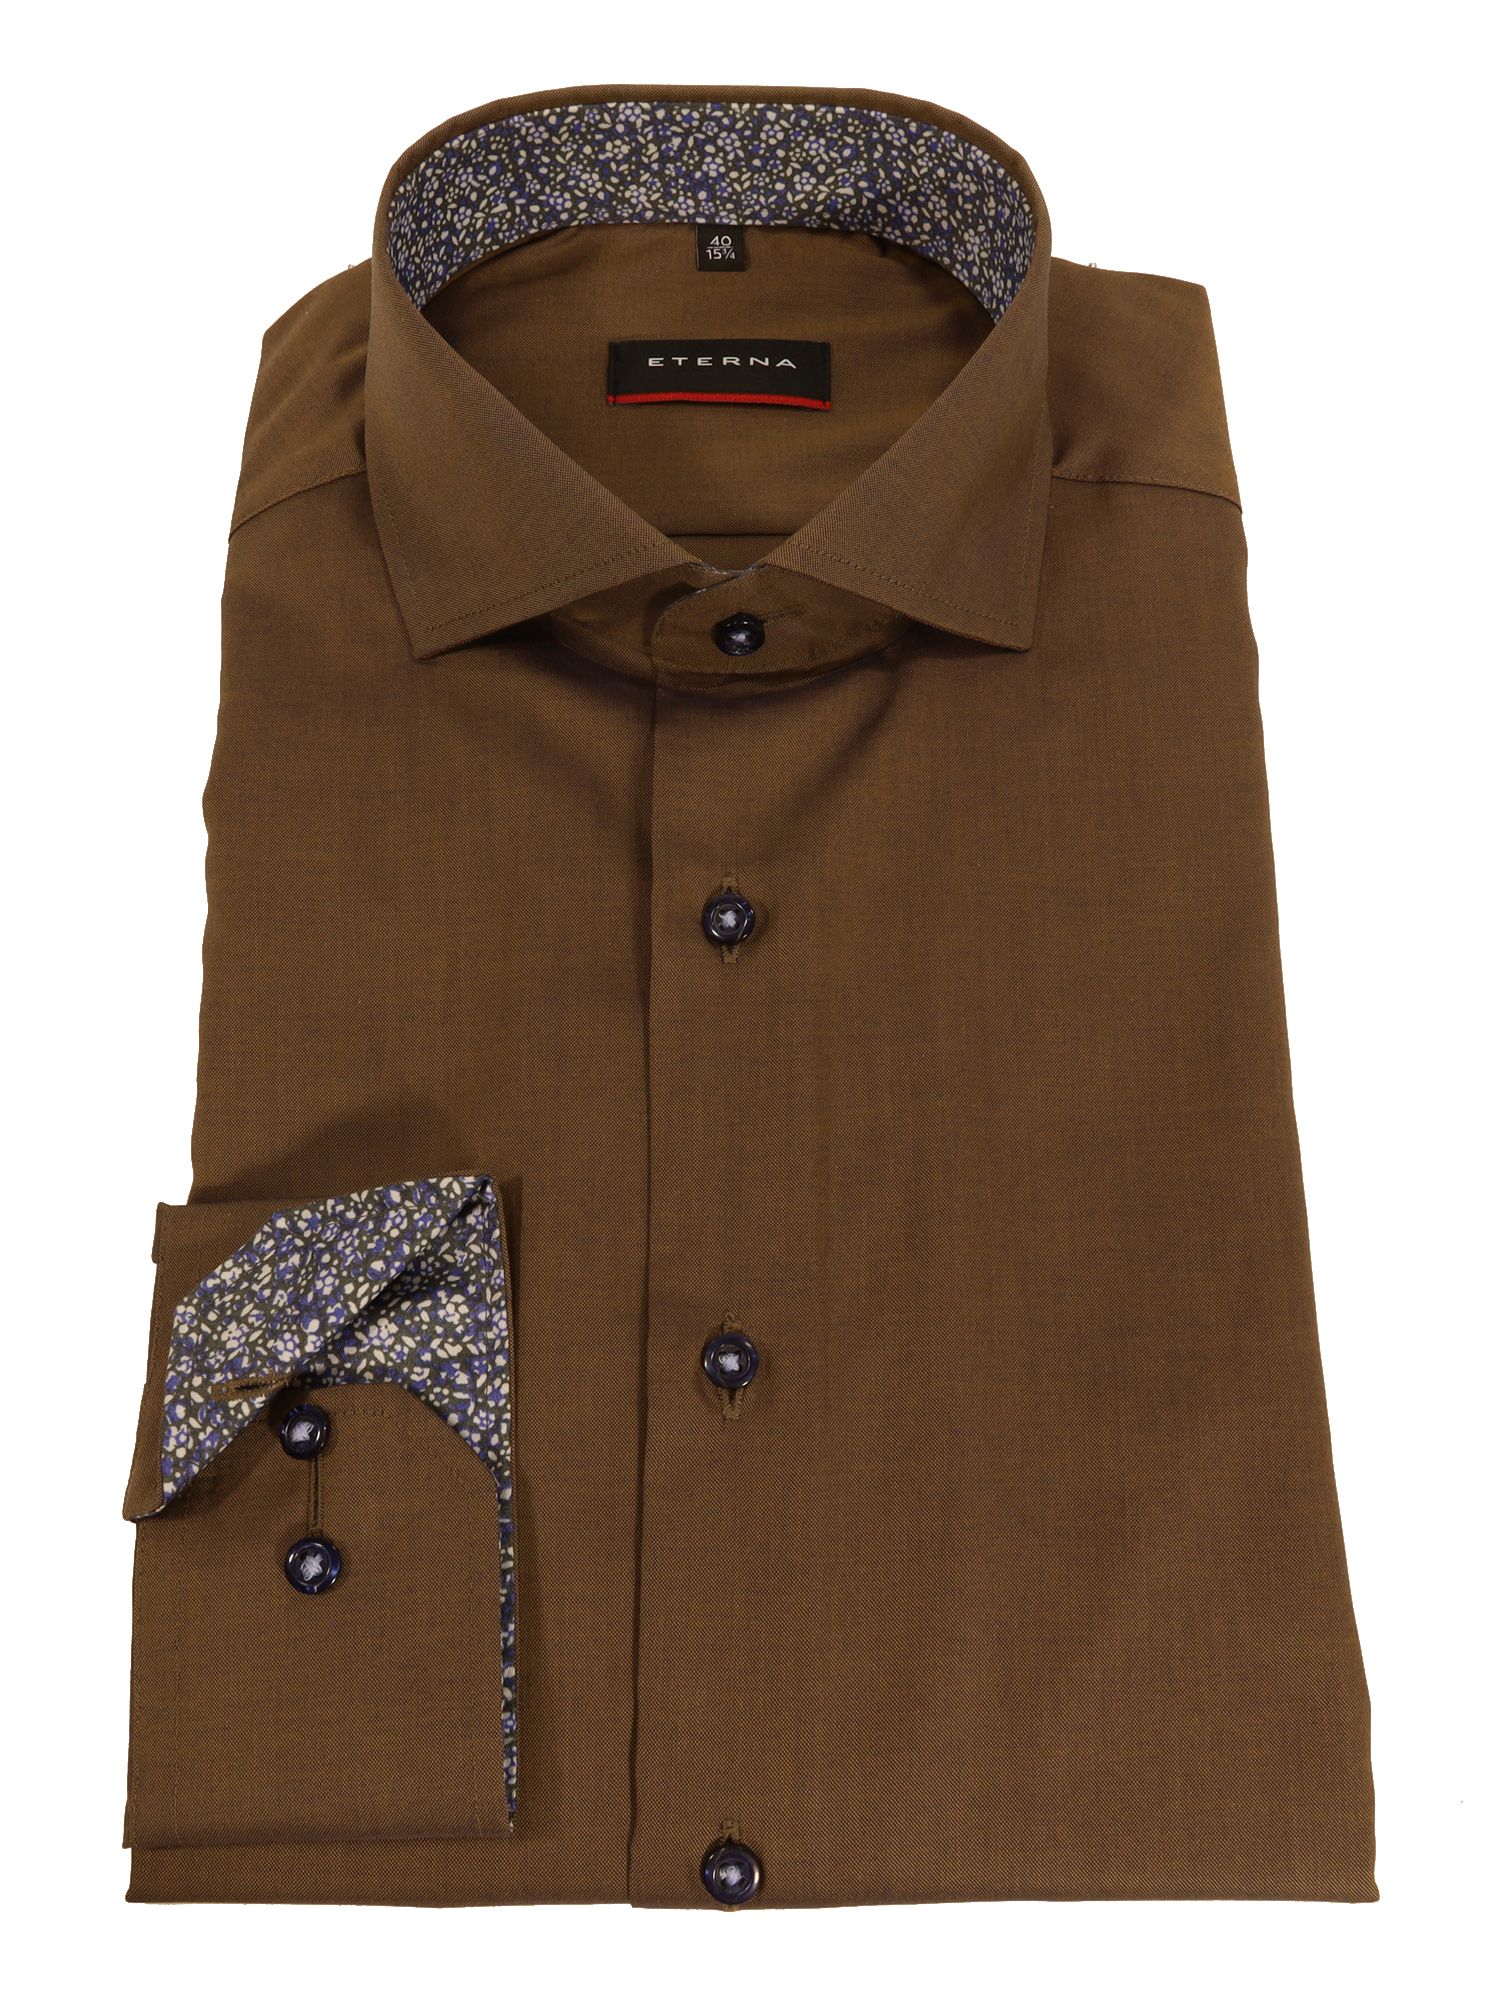 Мужская рубашка ETERNA, коричневая, цвет коричневый, размер 50 - фото 2